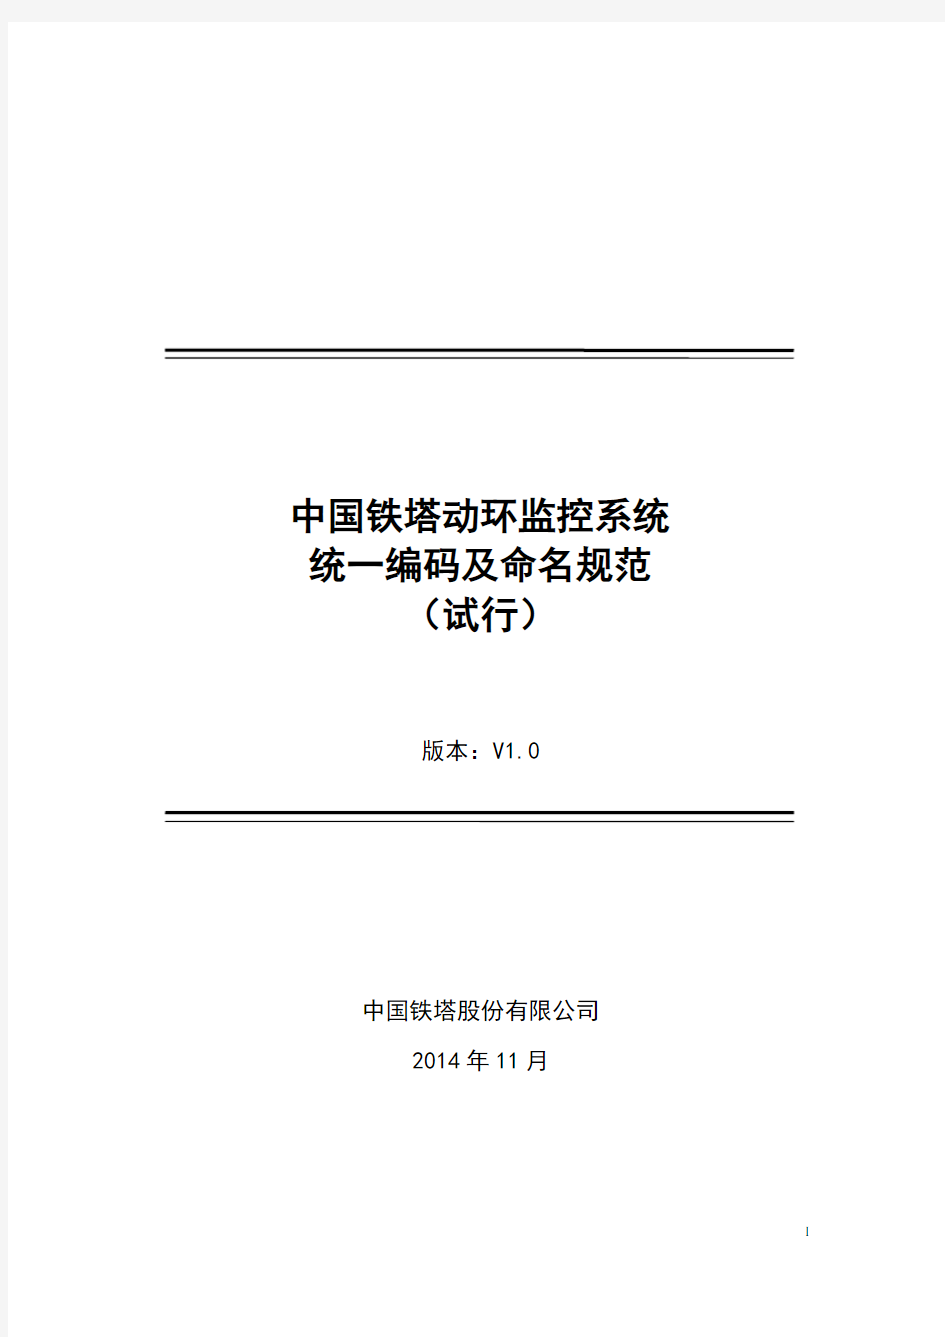 中国铁塔动环监控系统 统一编码及命名规范-20141124